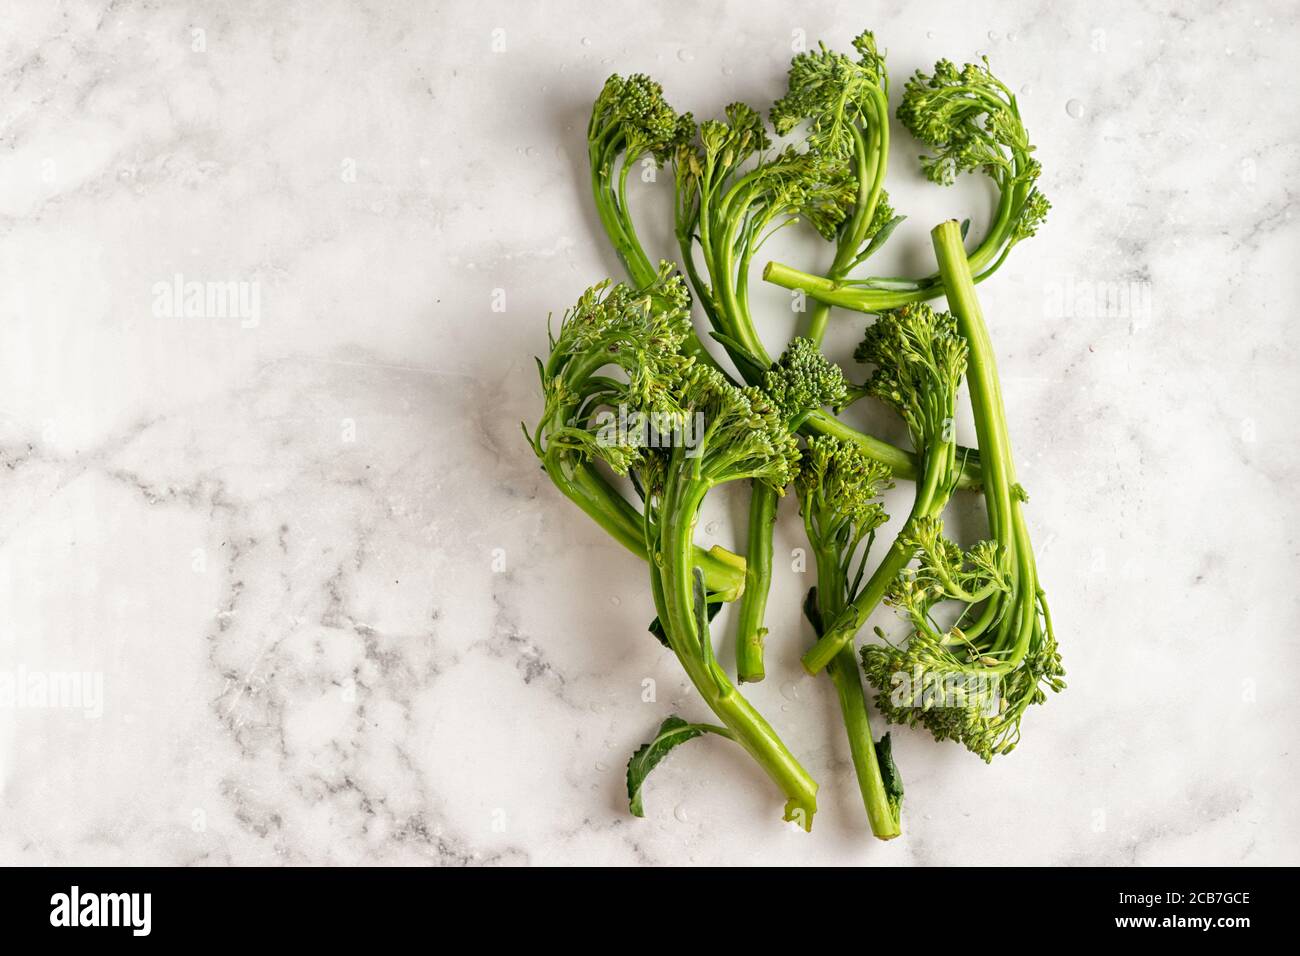 Vista superior de la col de broccolini sobre fondo blanco Foto de stock